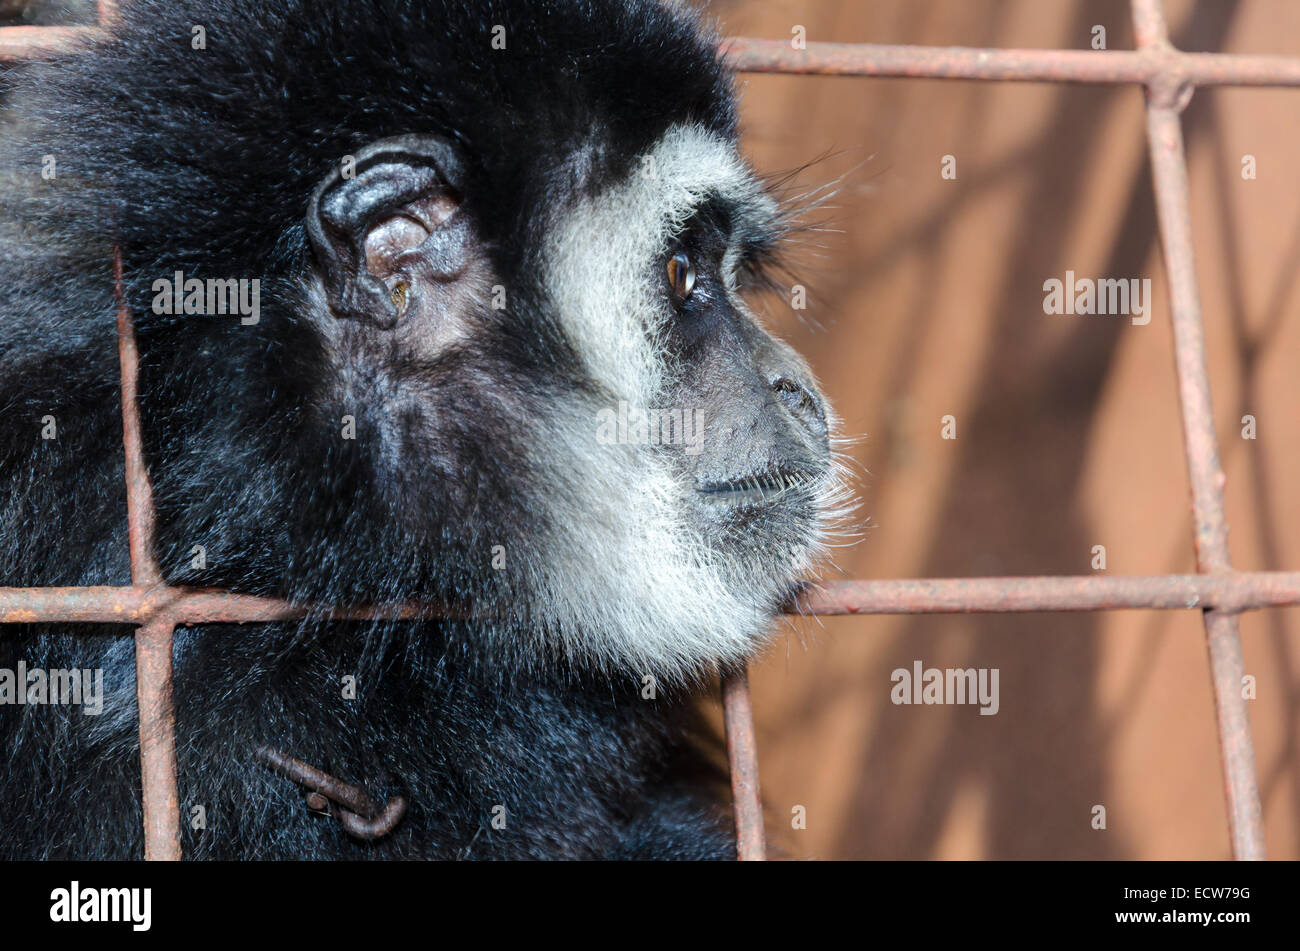 Visage et Yeux baissés de blanc-remis gibbon (Hylobates lar) dans une cage. Le problème de commerce illicite d'espèces sauvages Banque D'Images